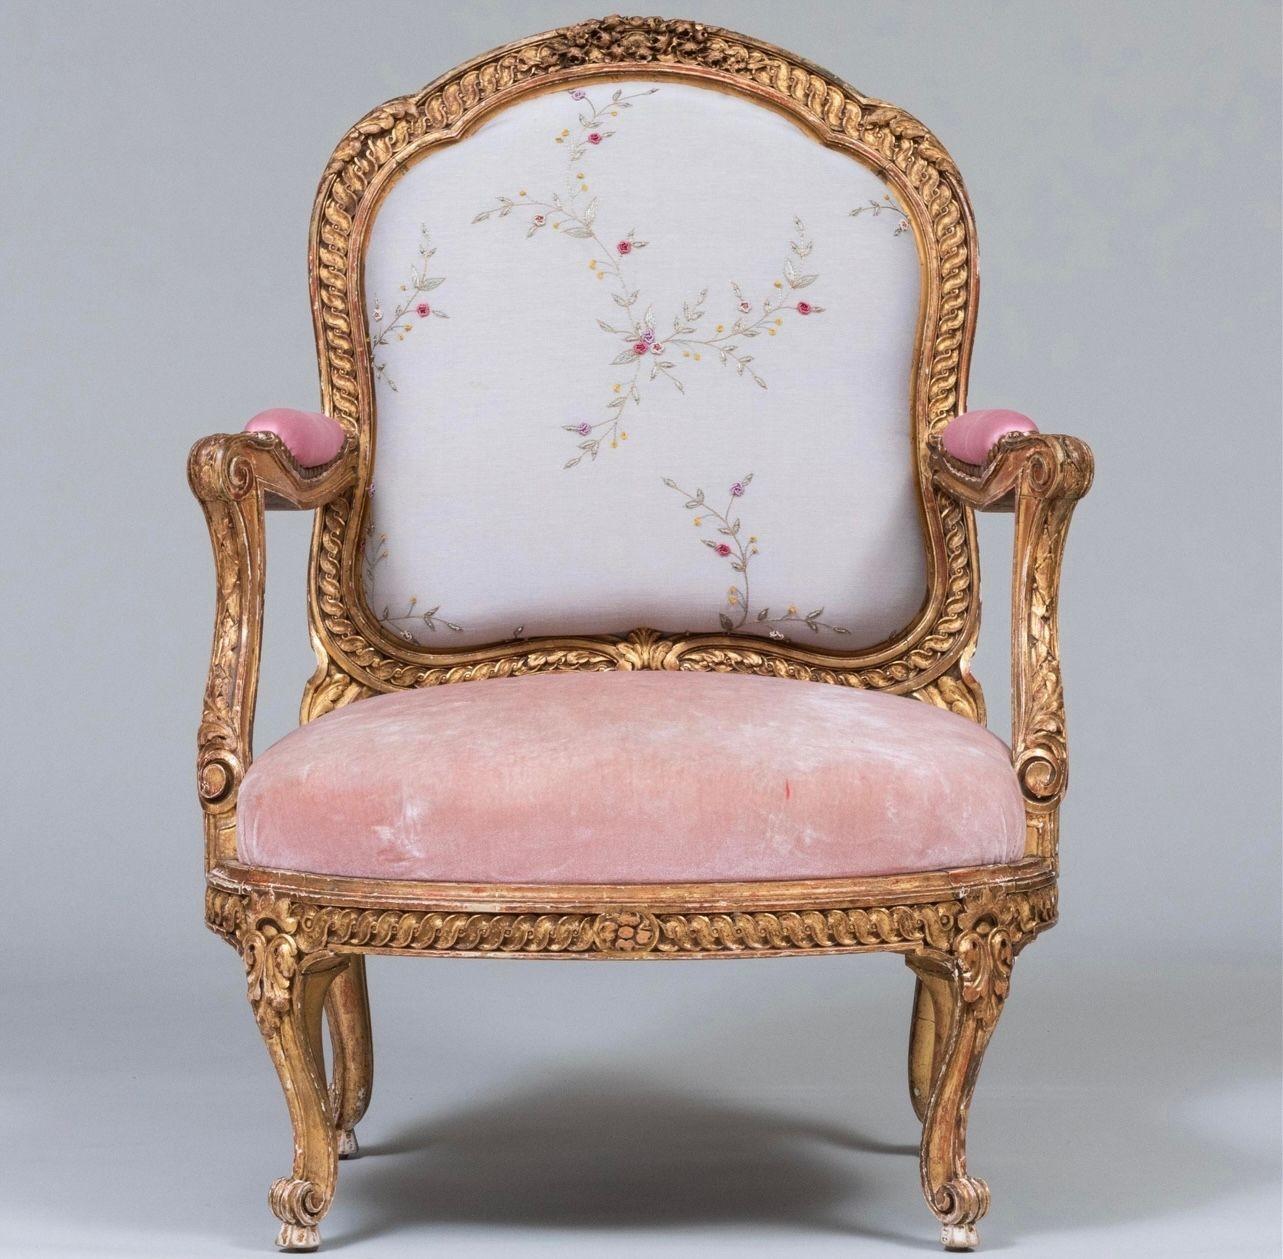 Cette chaise est une copie d'une suite de chaises réalisées par Nicholas Quinebert Foliot pour le Petit Trianon vers 1765-70. Un original se trouve au Musée des Arts Décoratifs de Paris.